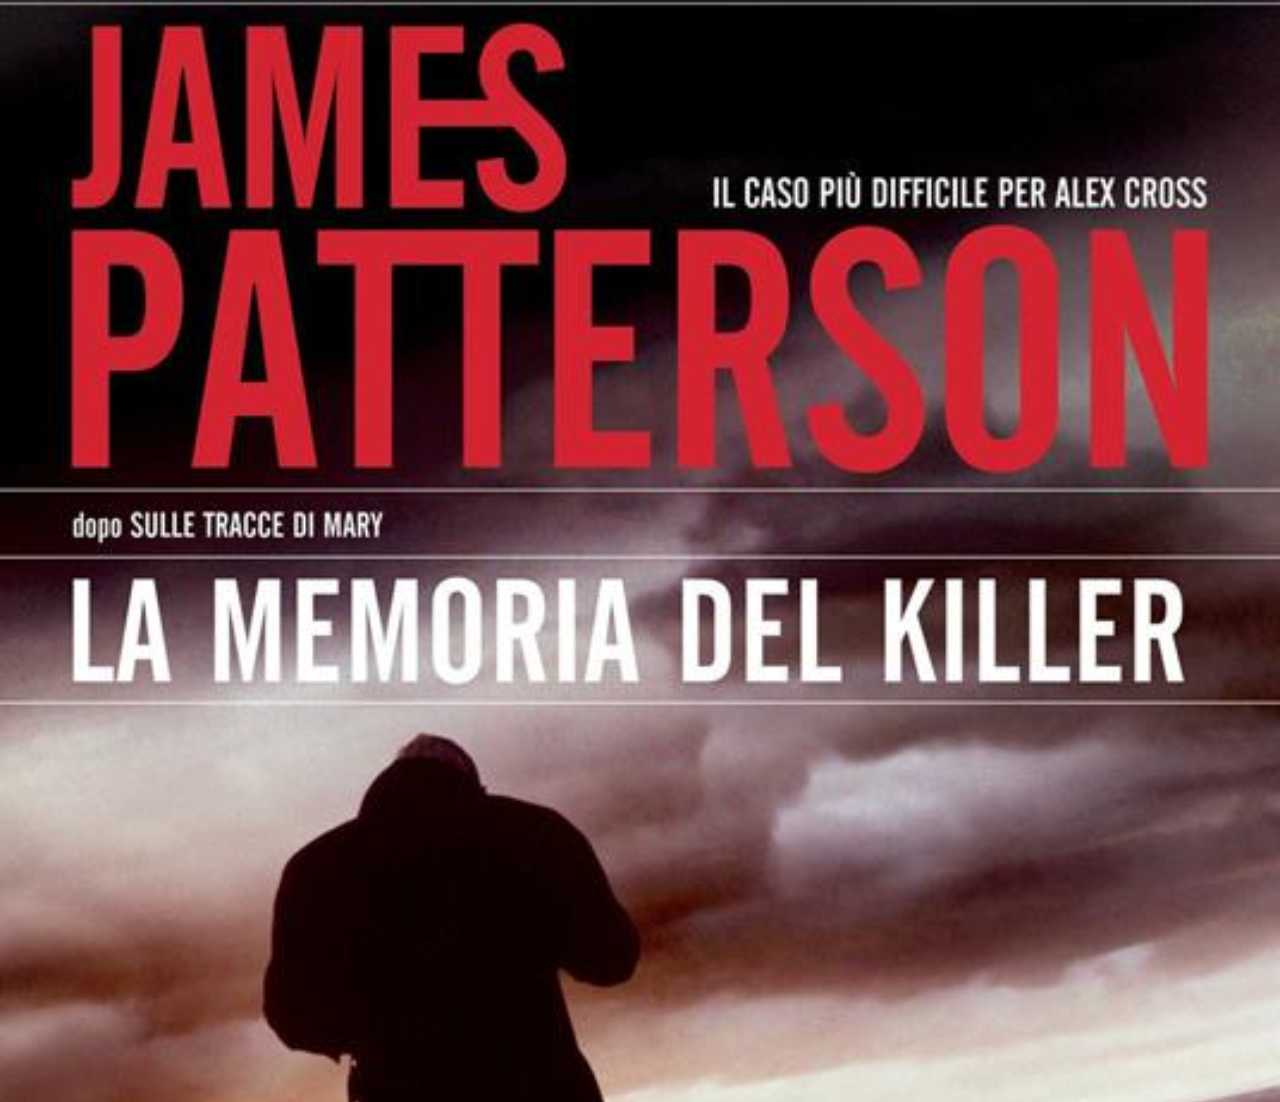 La memoria del killer è un libro di James Patterson